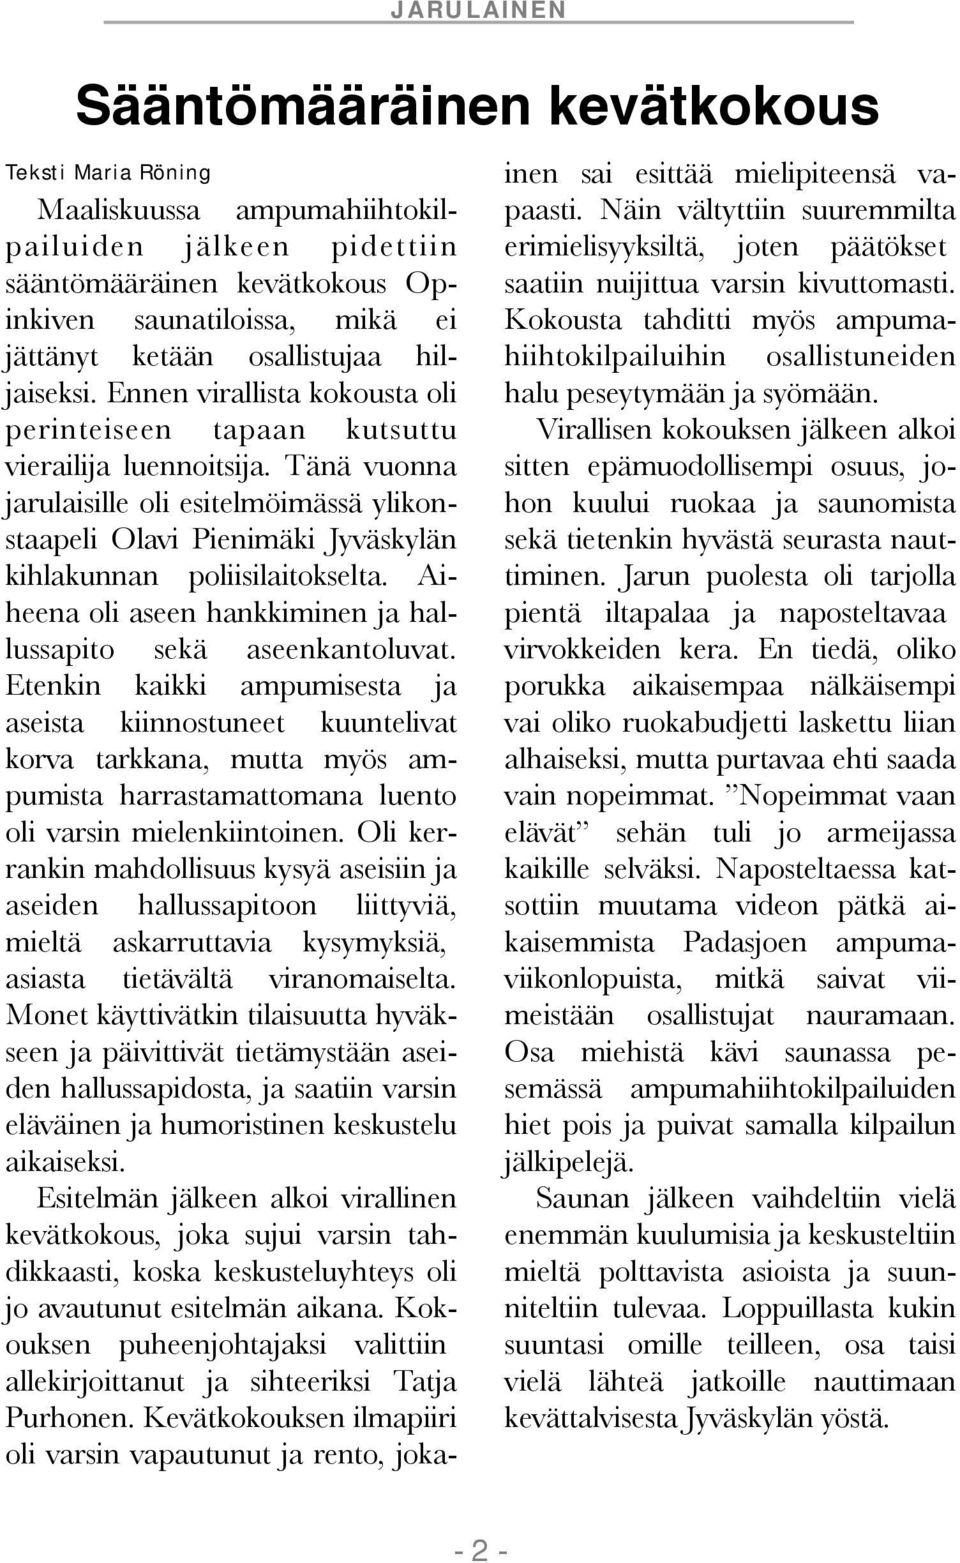 Tänä vuonna jarulaisille oli esitelmöimässä ylikonstaapeli Olavi Pienimäki Jyväskylän kihlakunnan poliisilaitokselta. Aiheena oli aseen hankkiminen ja hallussapito sekä aseenkantoluvat.